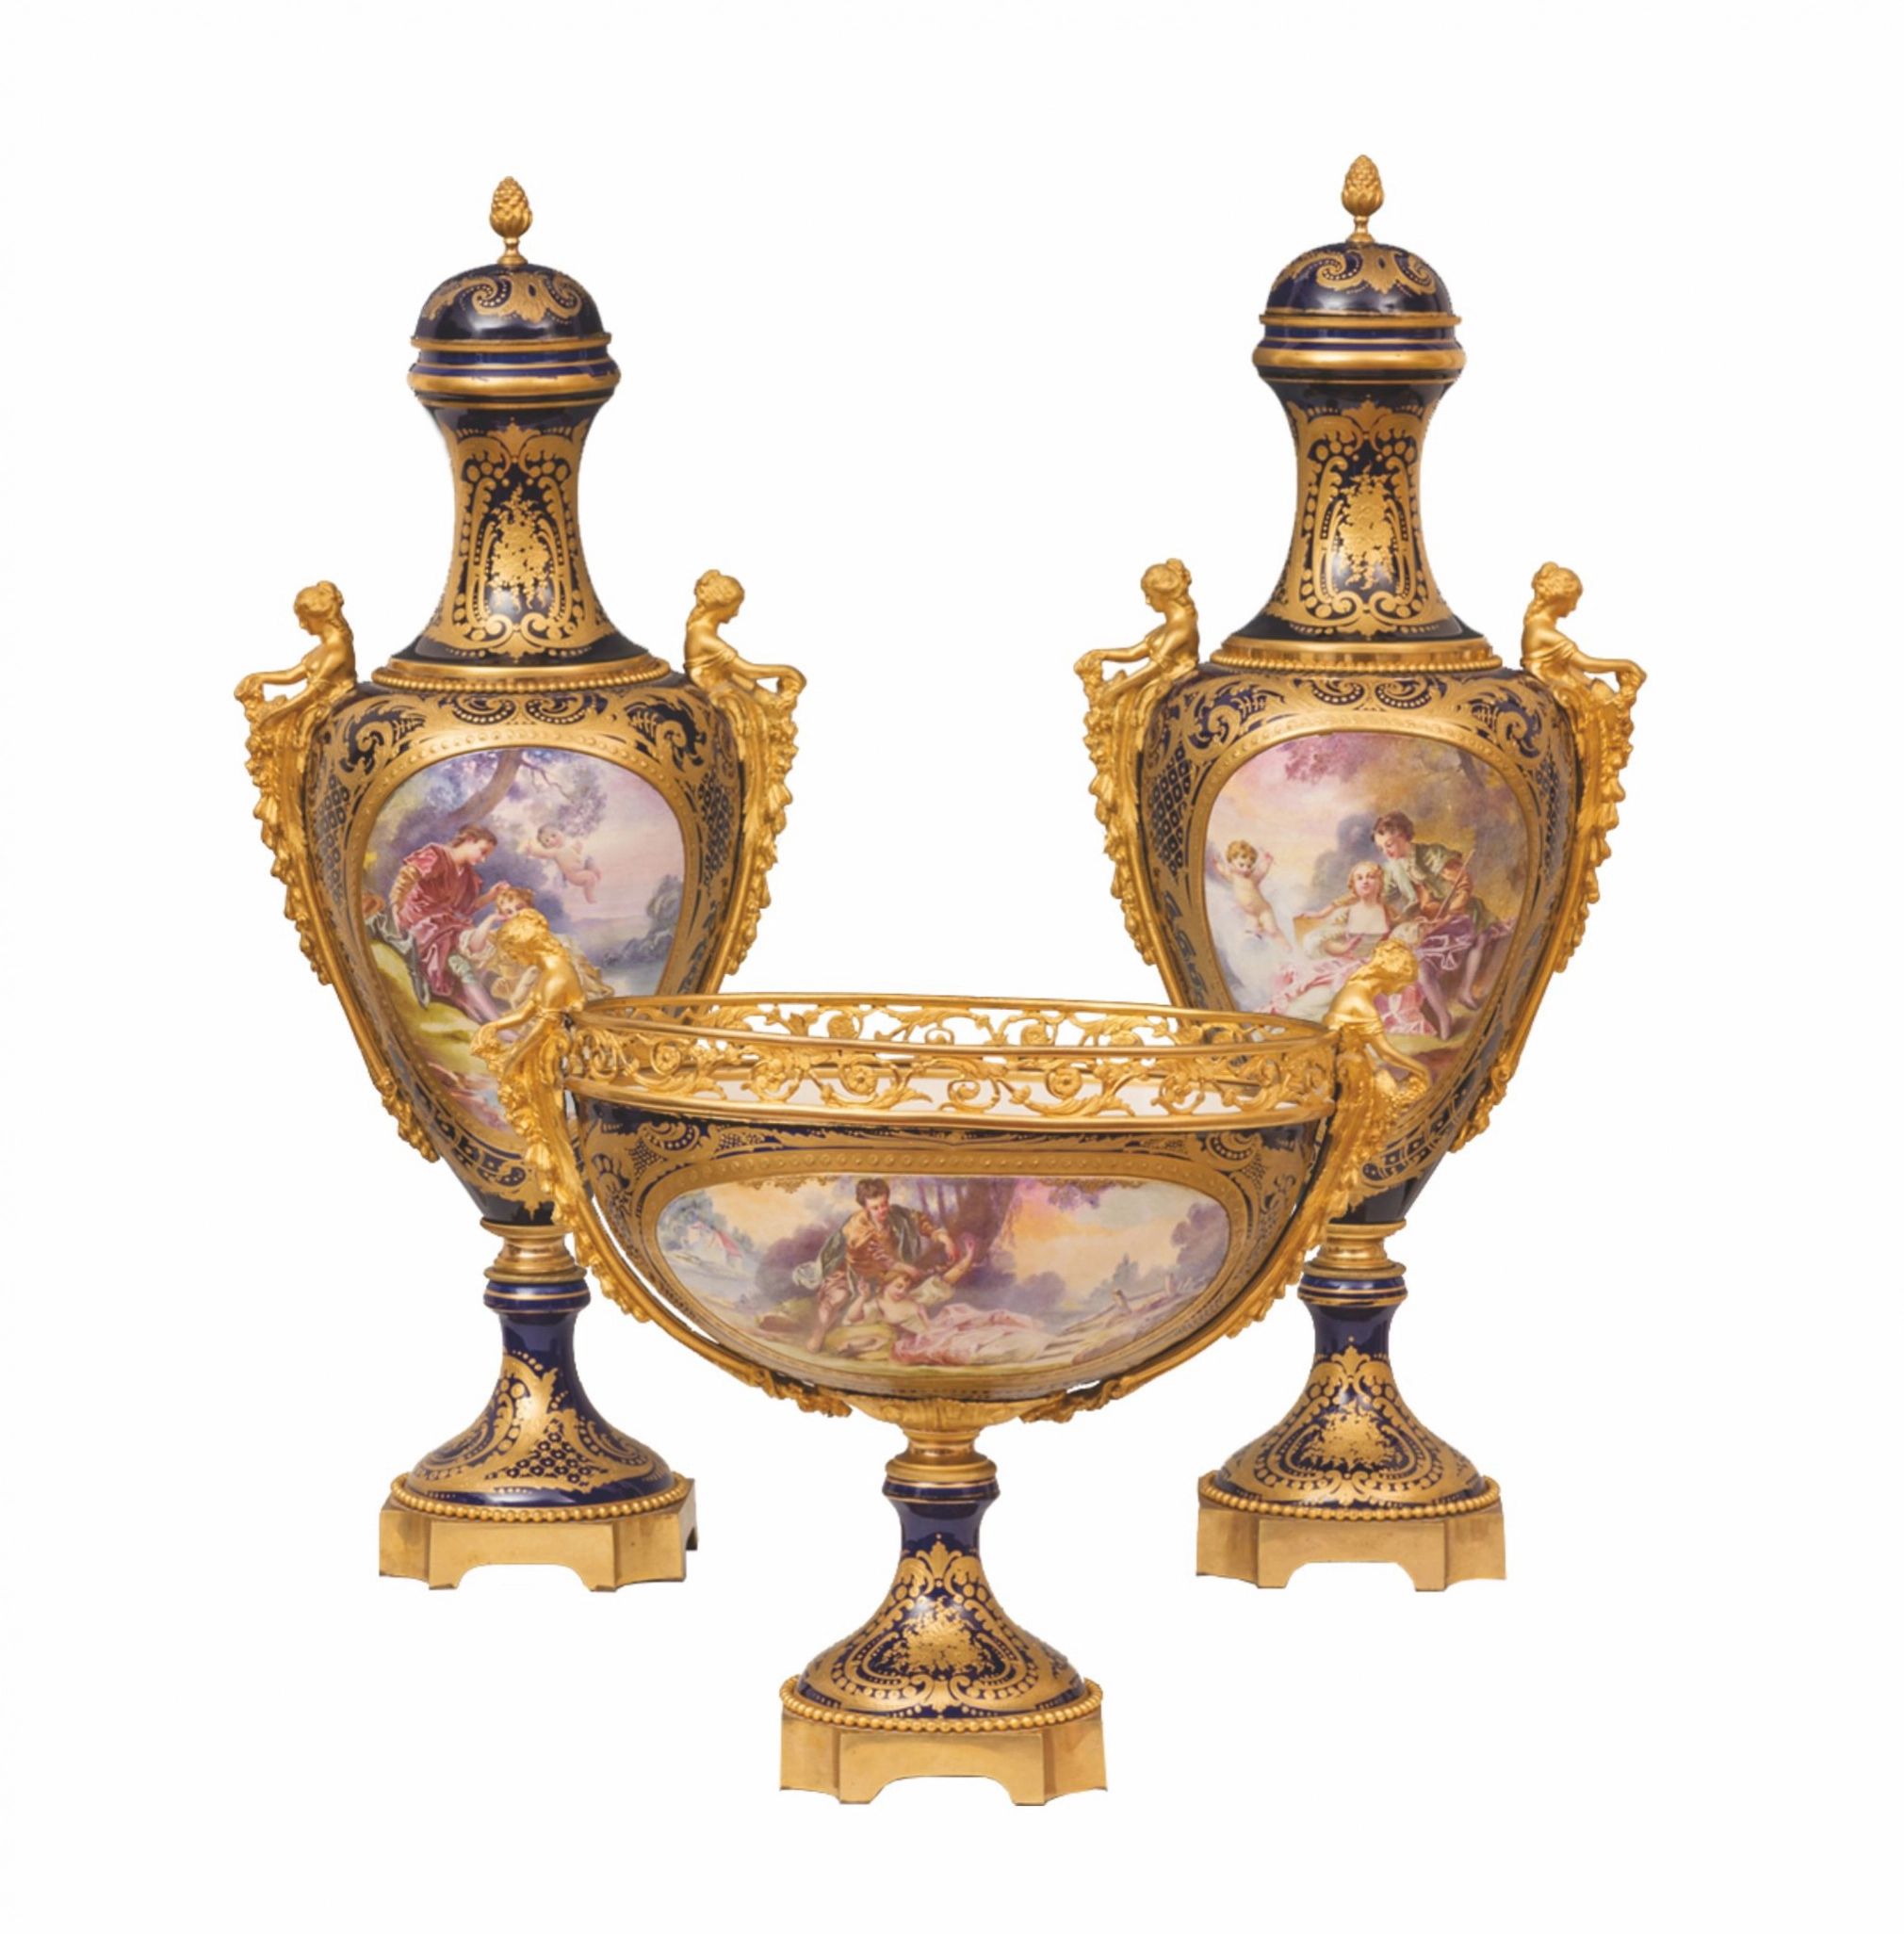 Sevres Porcelain set 19th century.